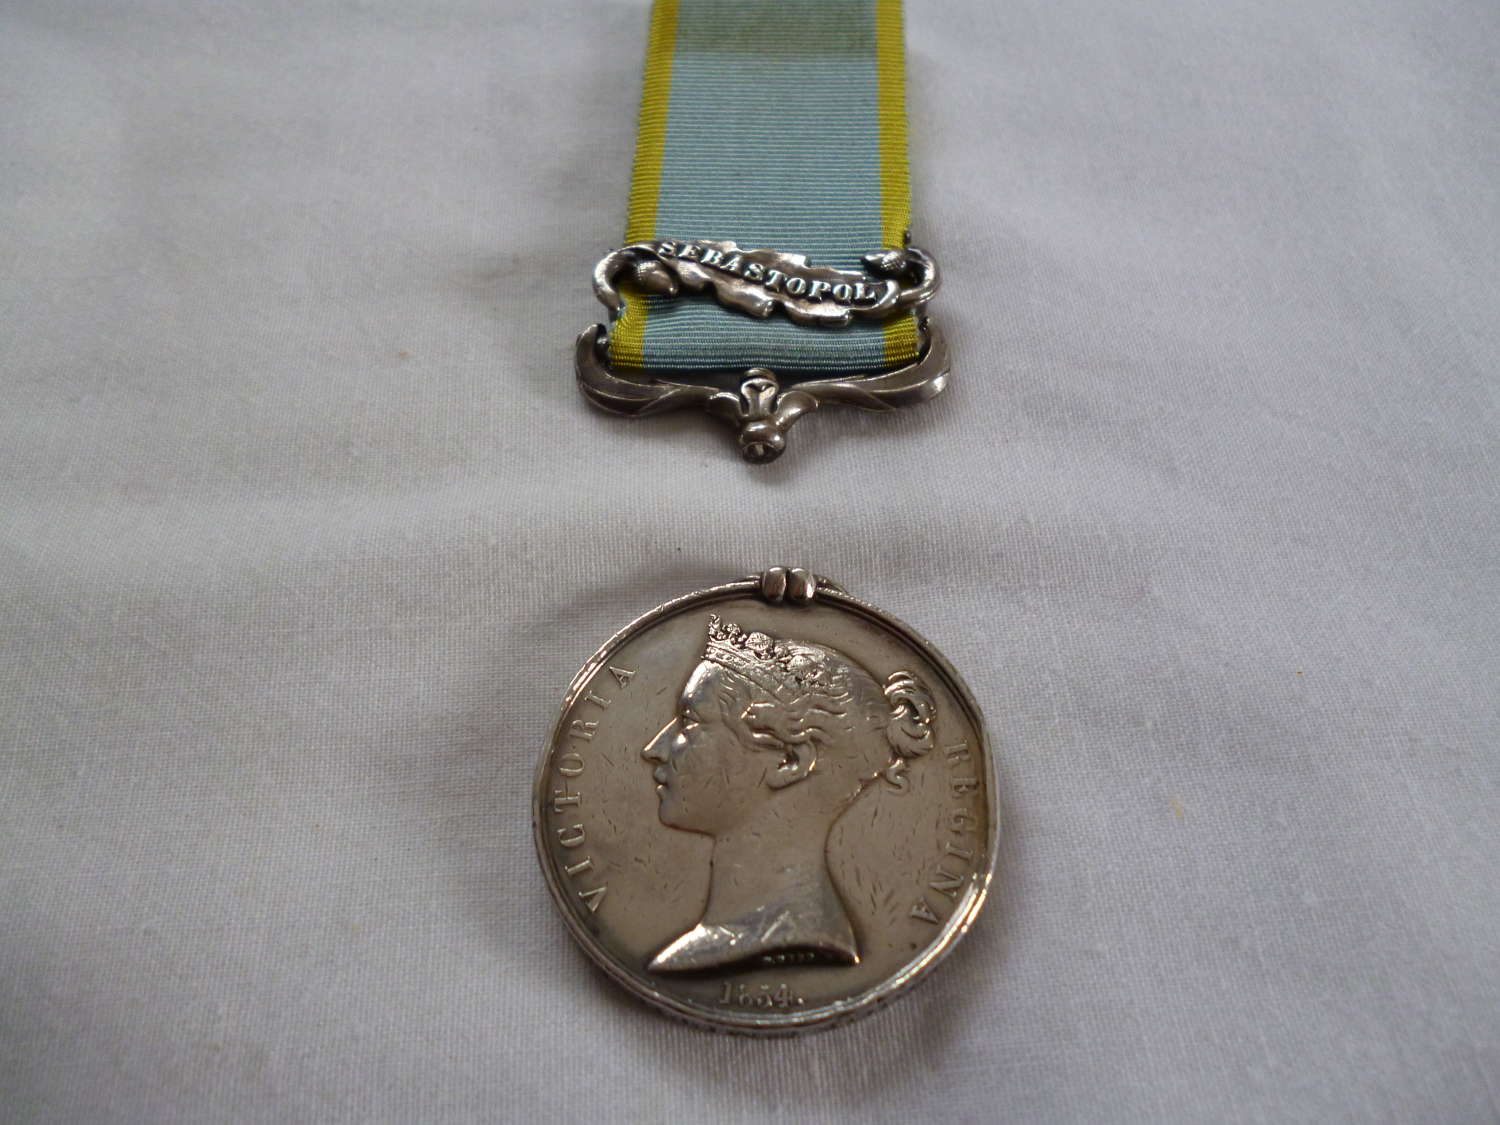 Crimea Medal 46th Regiment